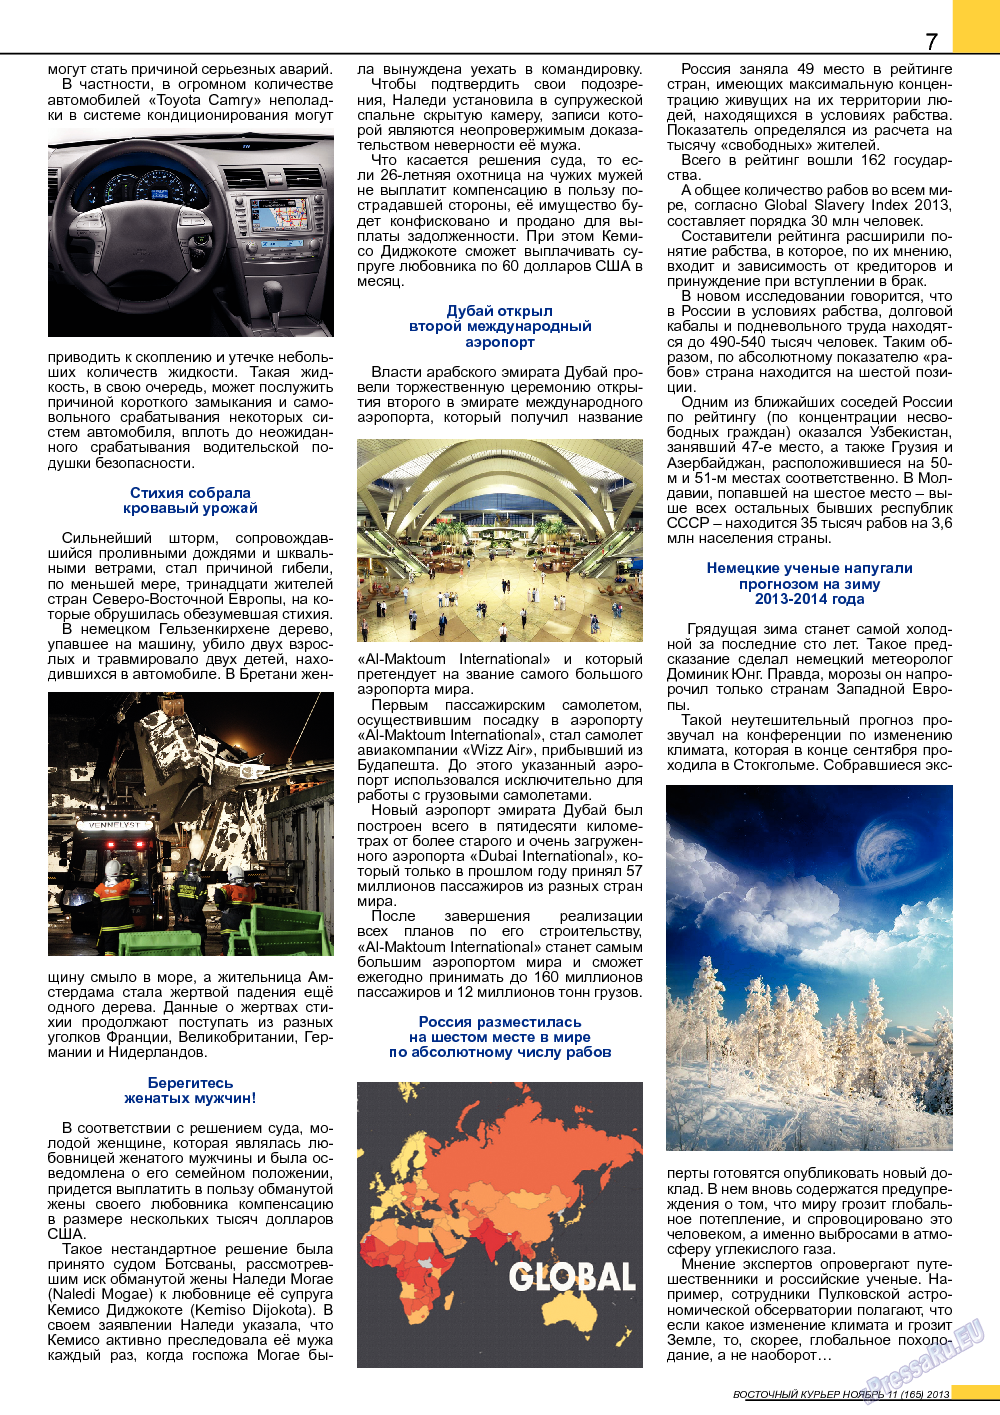 Восточный курьер, журнал. 2013 №11 стр.7